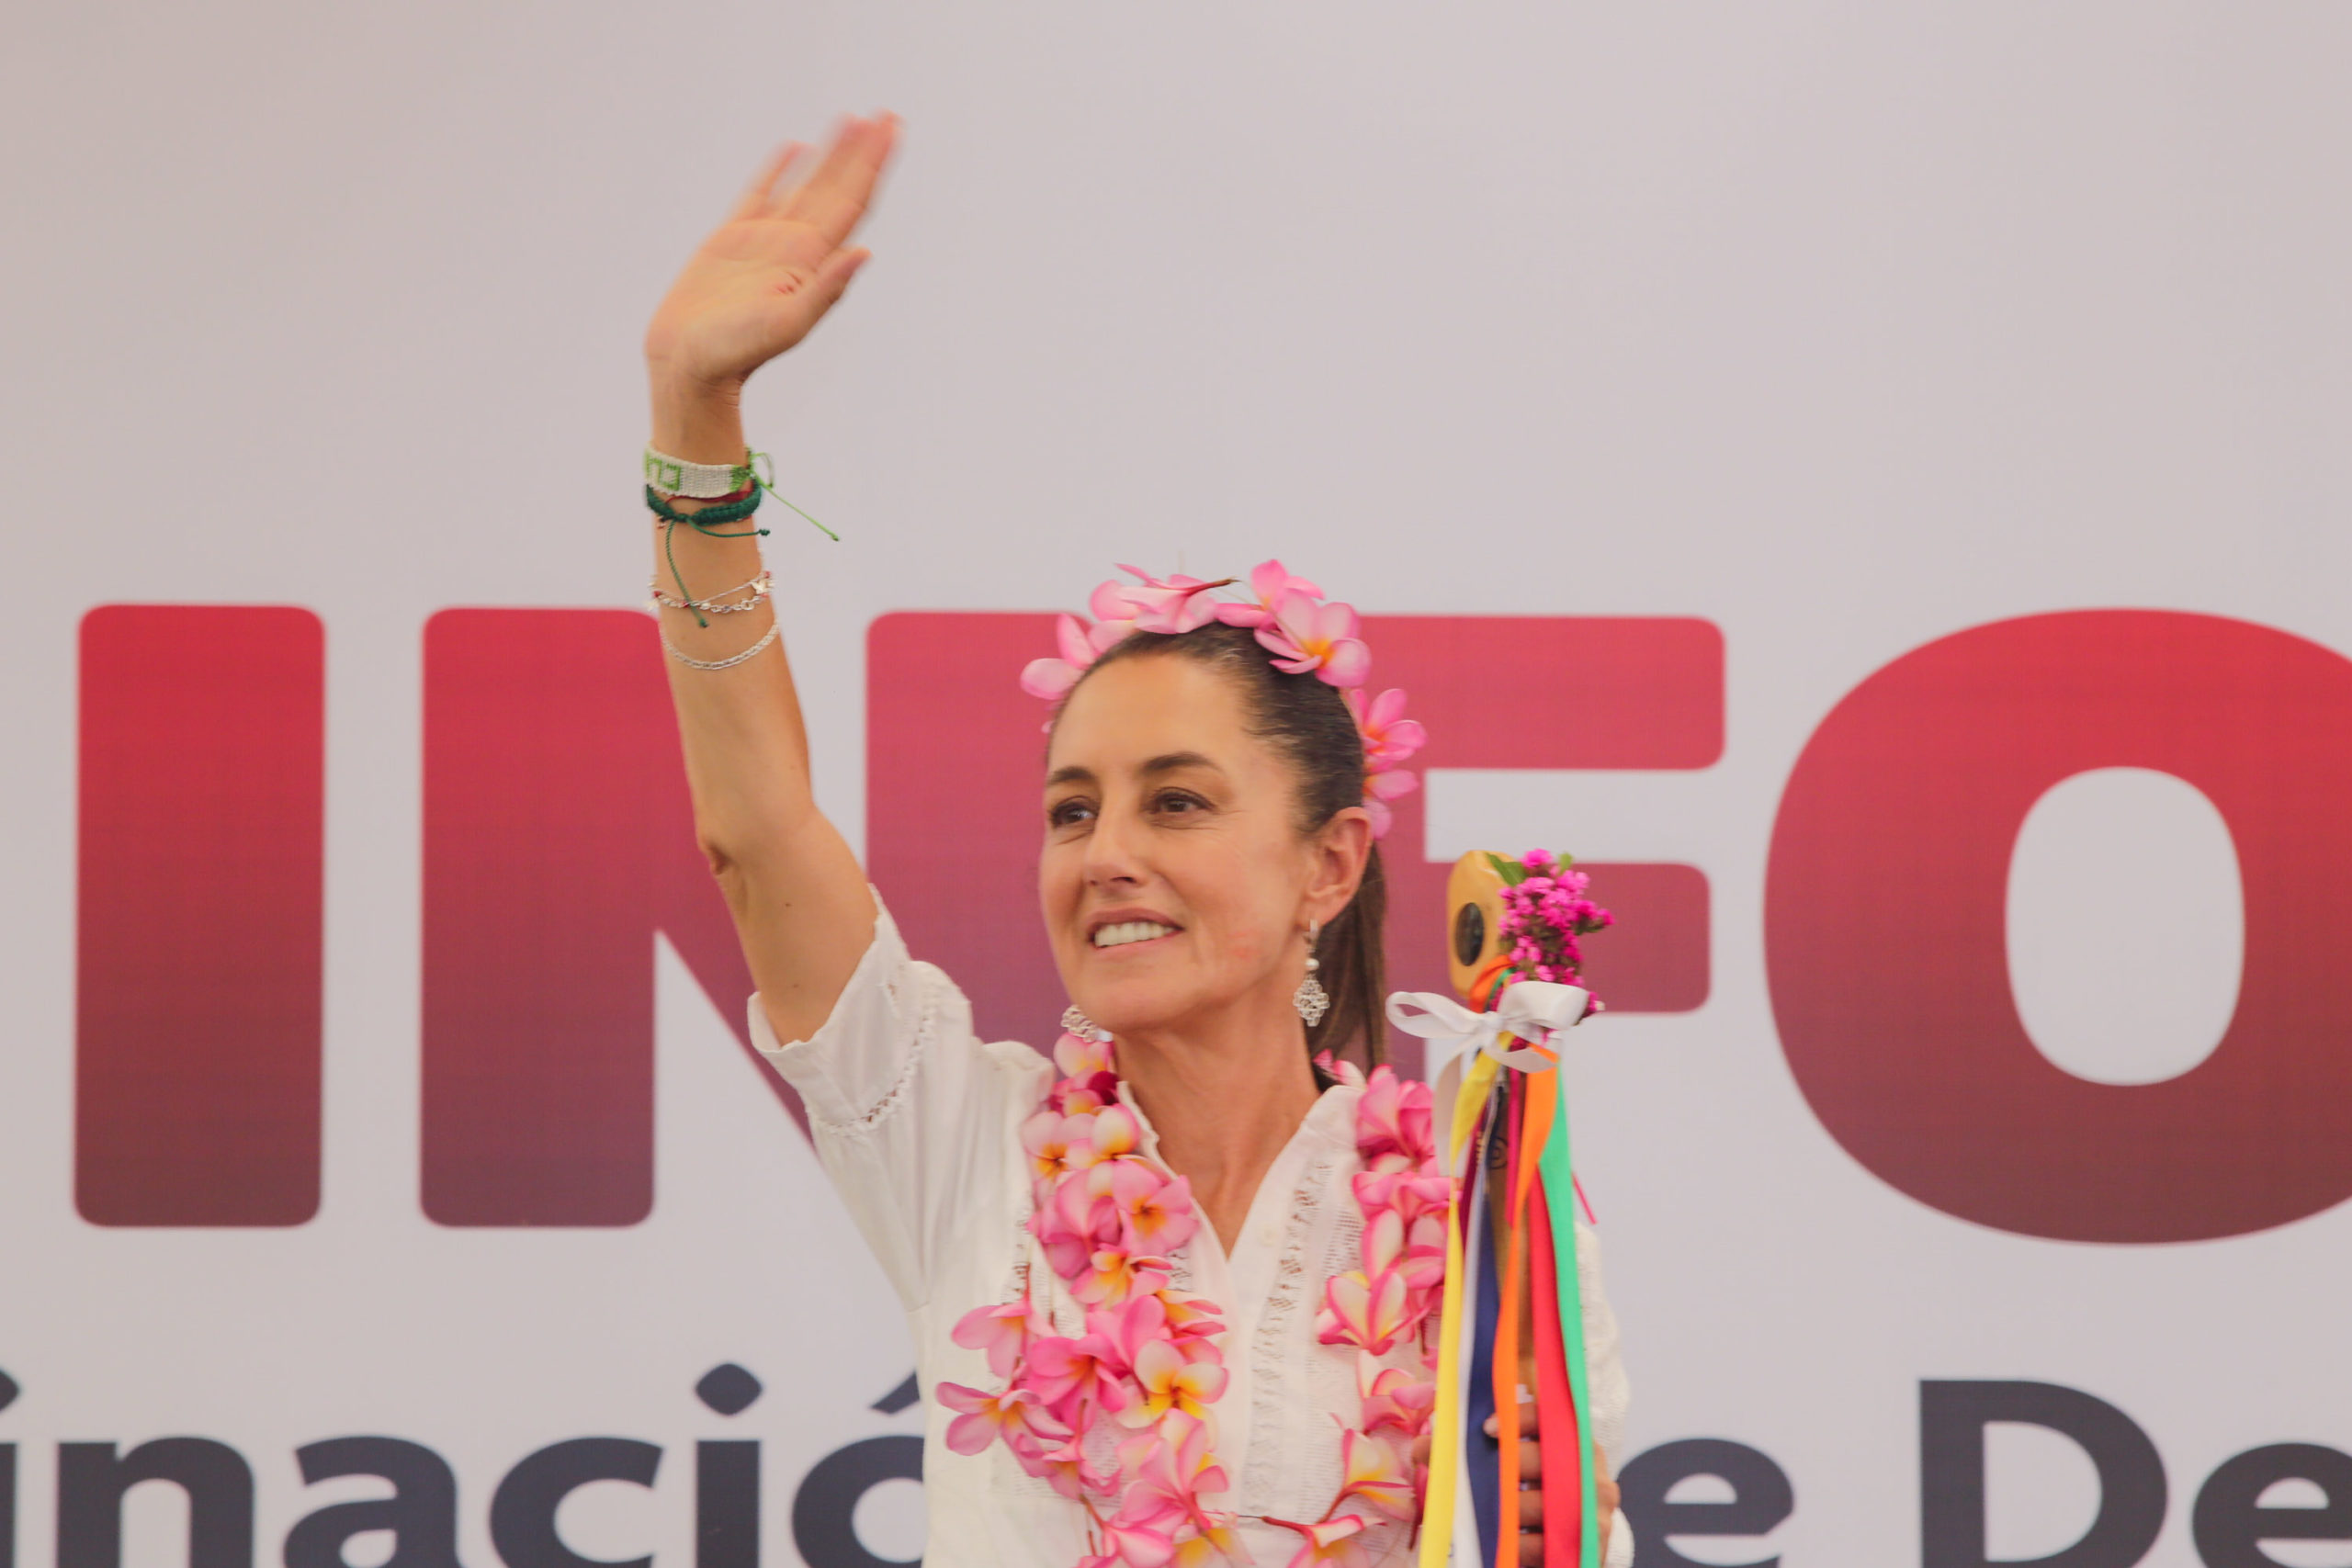 Durante su visita a Puebla, Claudia Sheinbaum dio por sentado que se encuentra arriba en las encuestas